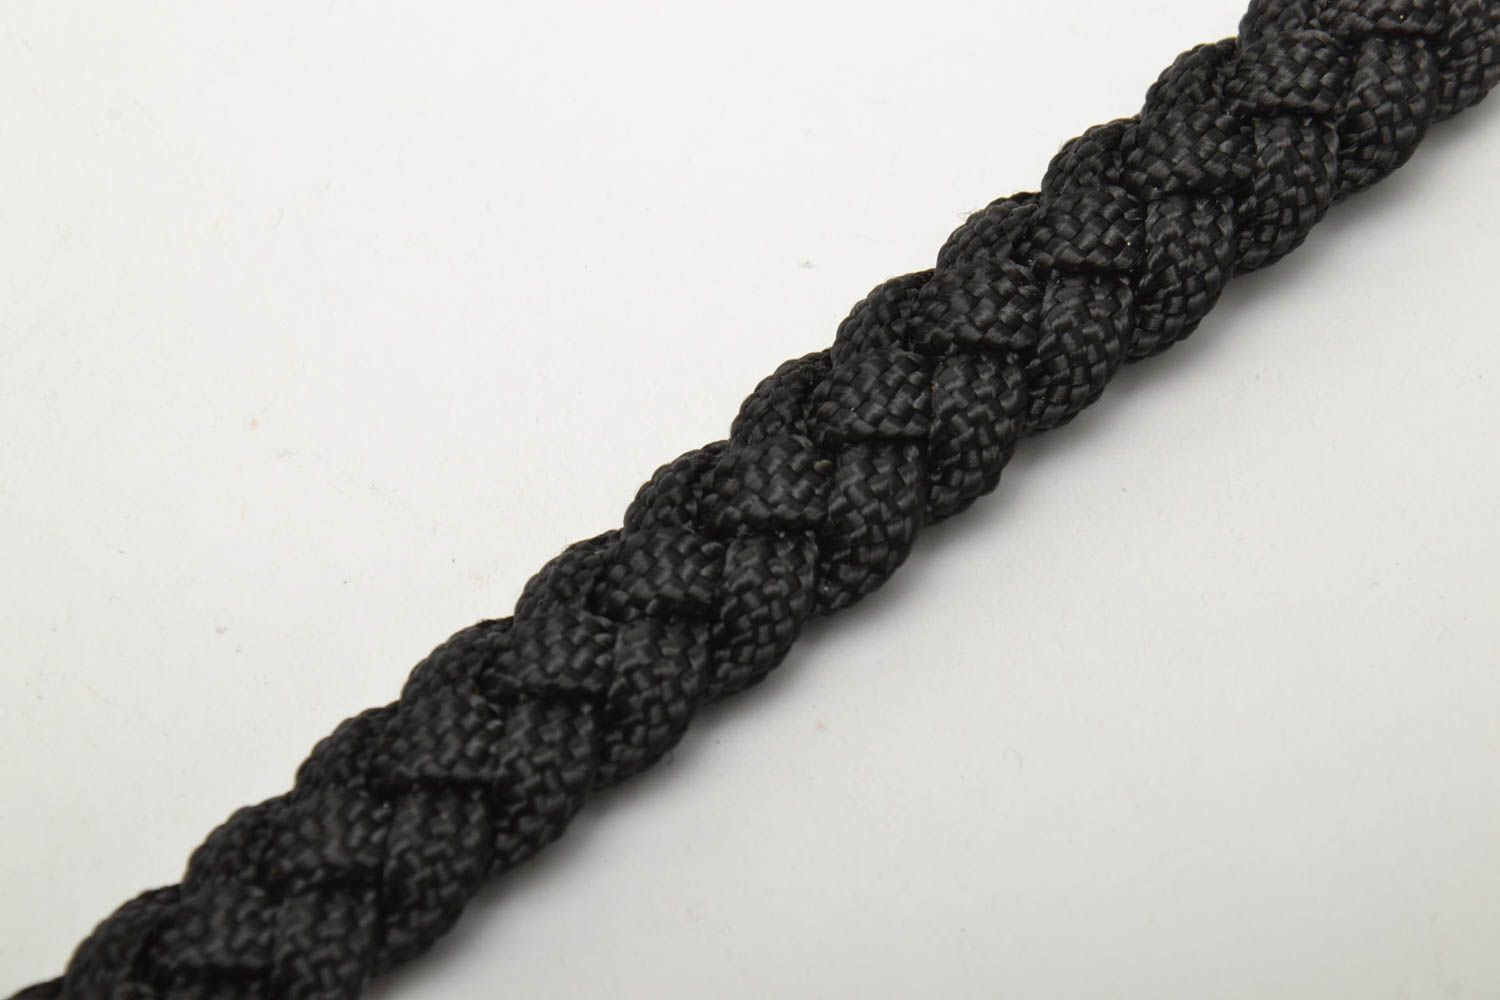 Textil Halsband für Hund in Schwarz foto 4